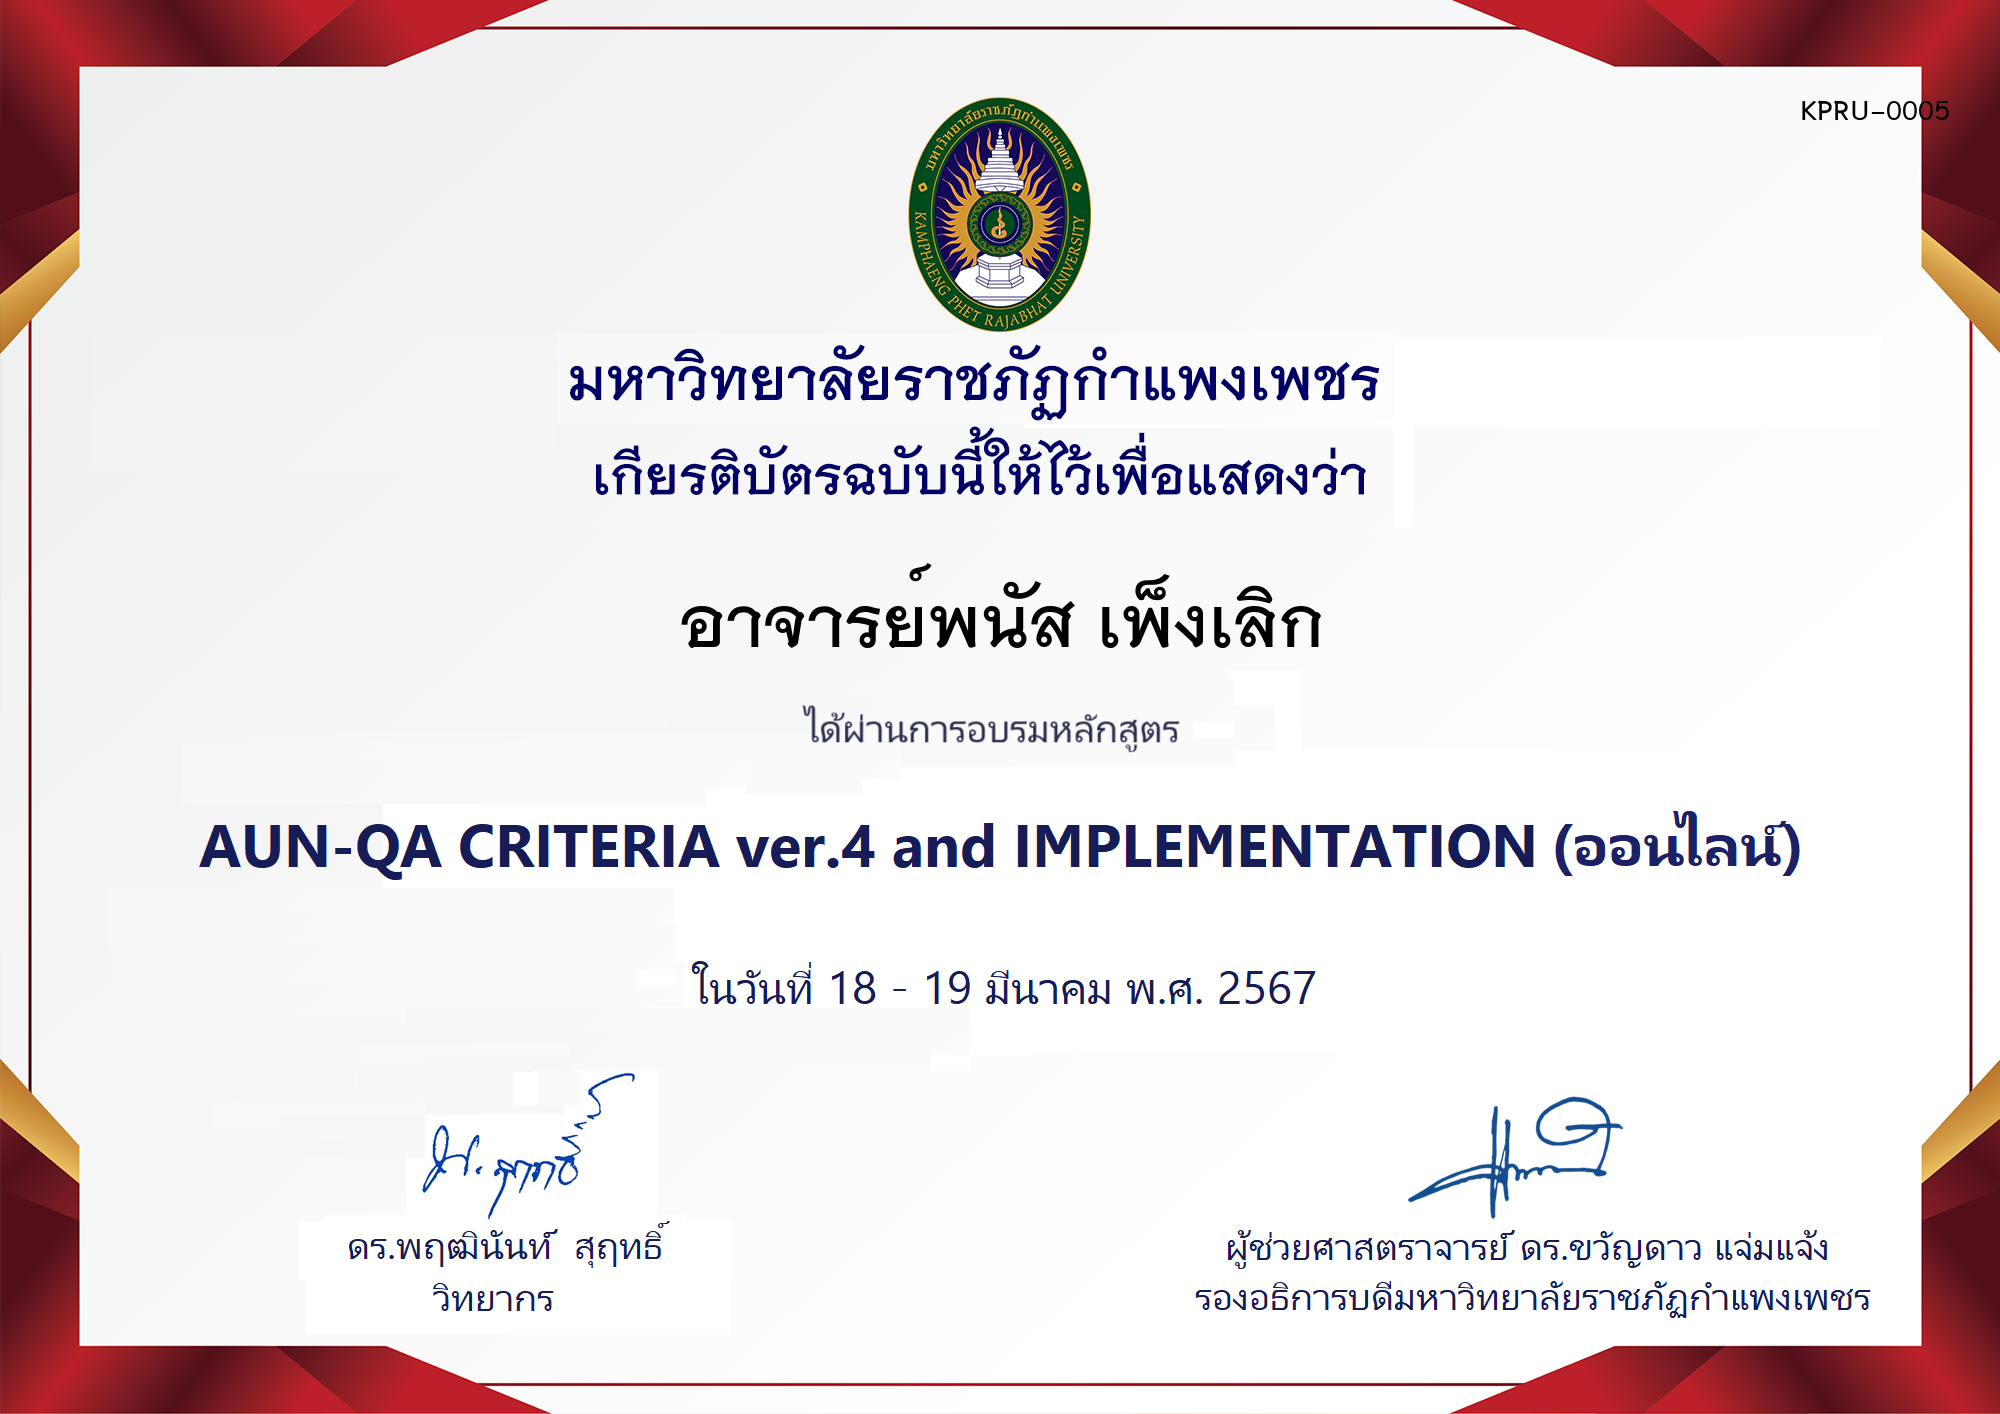 เกียรติบัตร โครงการอบรม AUN-QA criteria ver.4 and Implementation ของ อาจารย์พนัส เพ็งเลิก